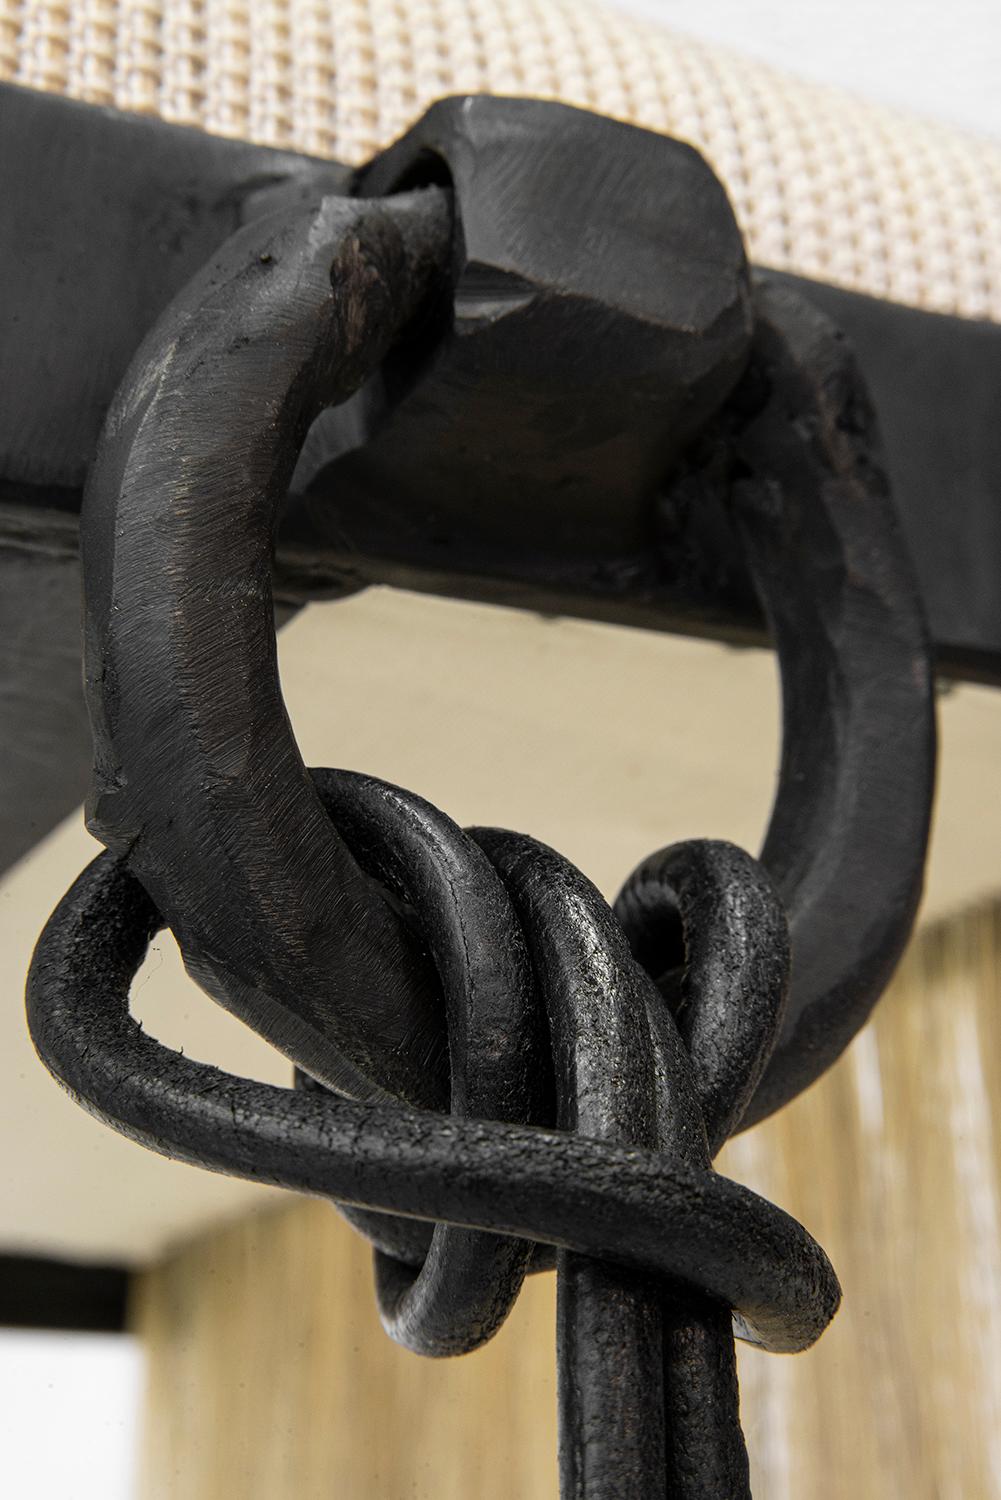 Blackened Stool/Bench Modern Medieval Handmade Horsehair Iron Woven Textile Fringe Tassel For Sale